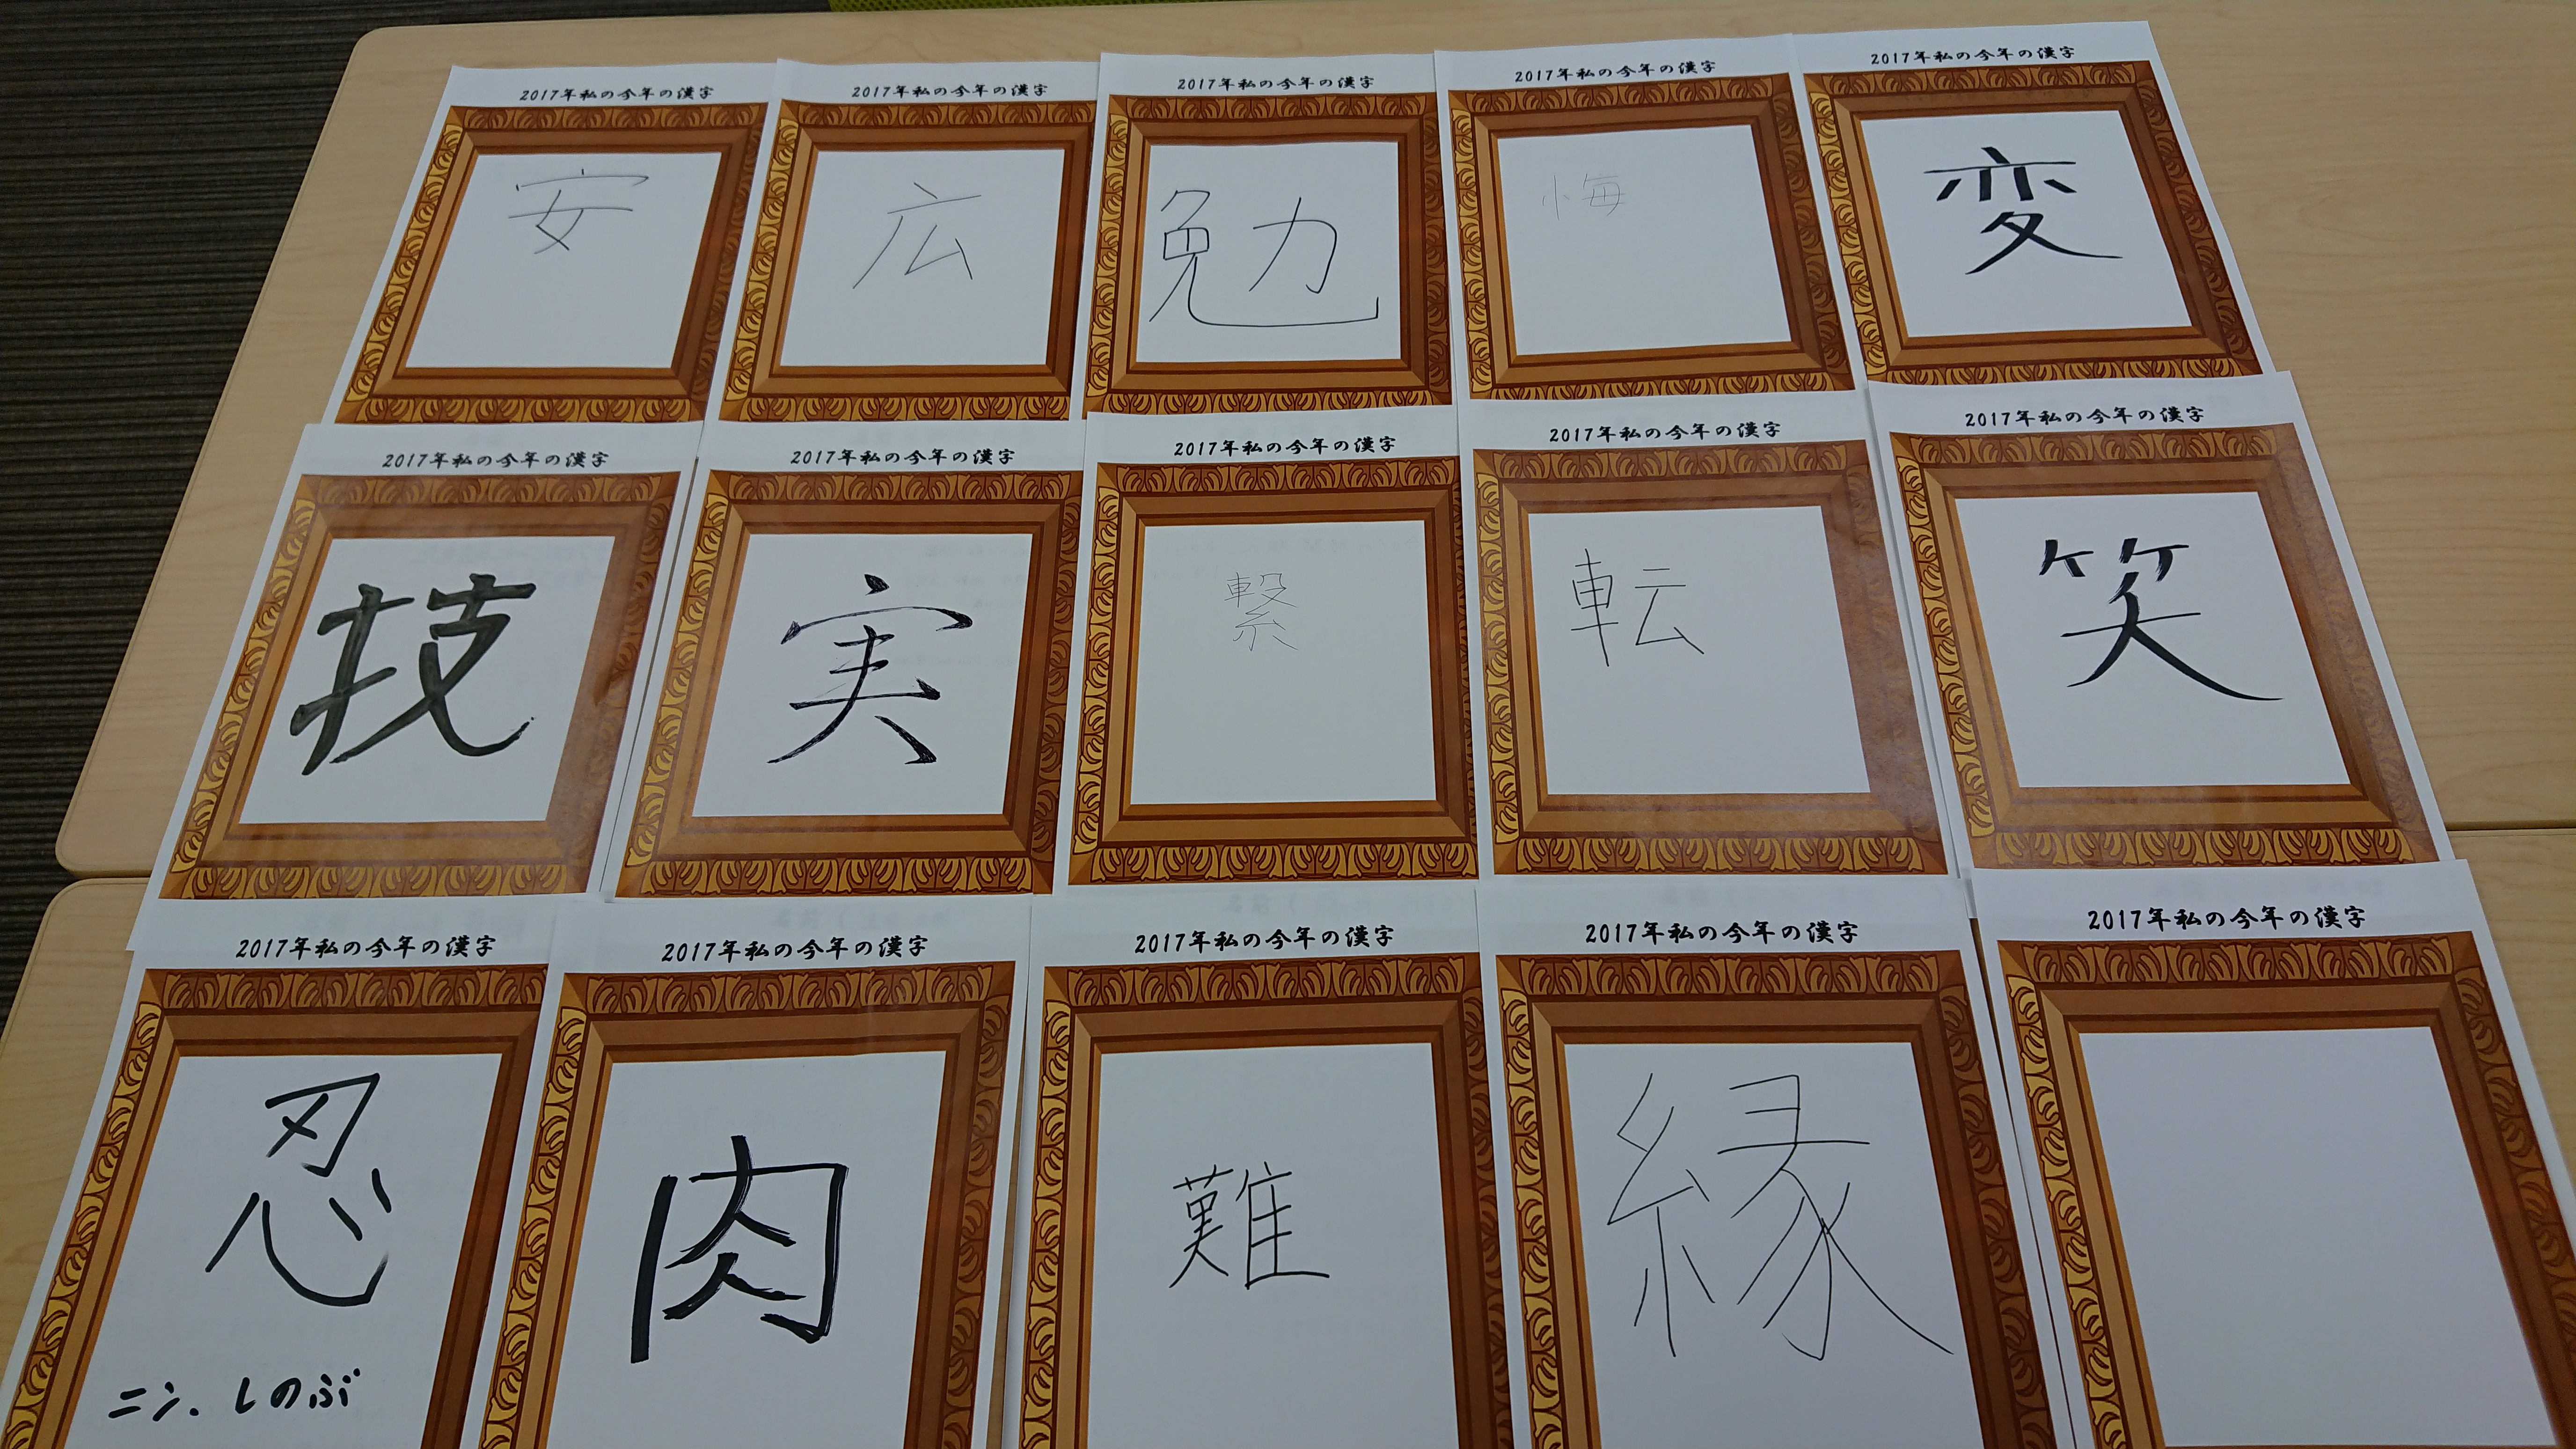 ジョブステーションの皆さんに 今年の漢字 一文字を考えて頂きました 東京の障害者就労移行支援事業所ジョブステーション